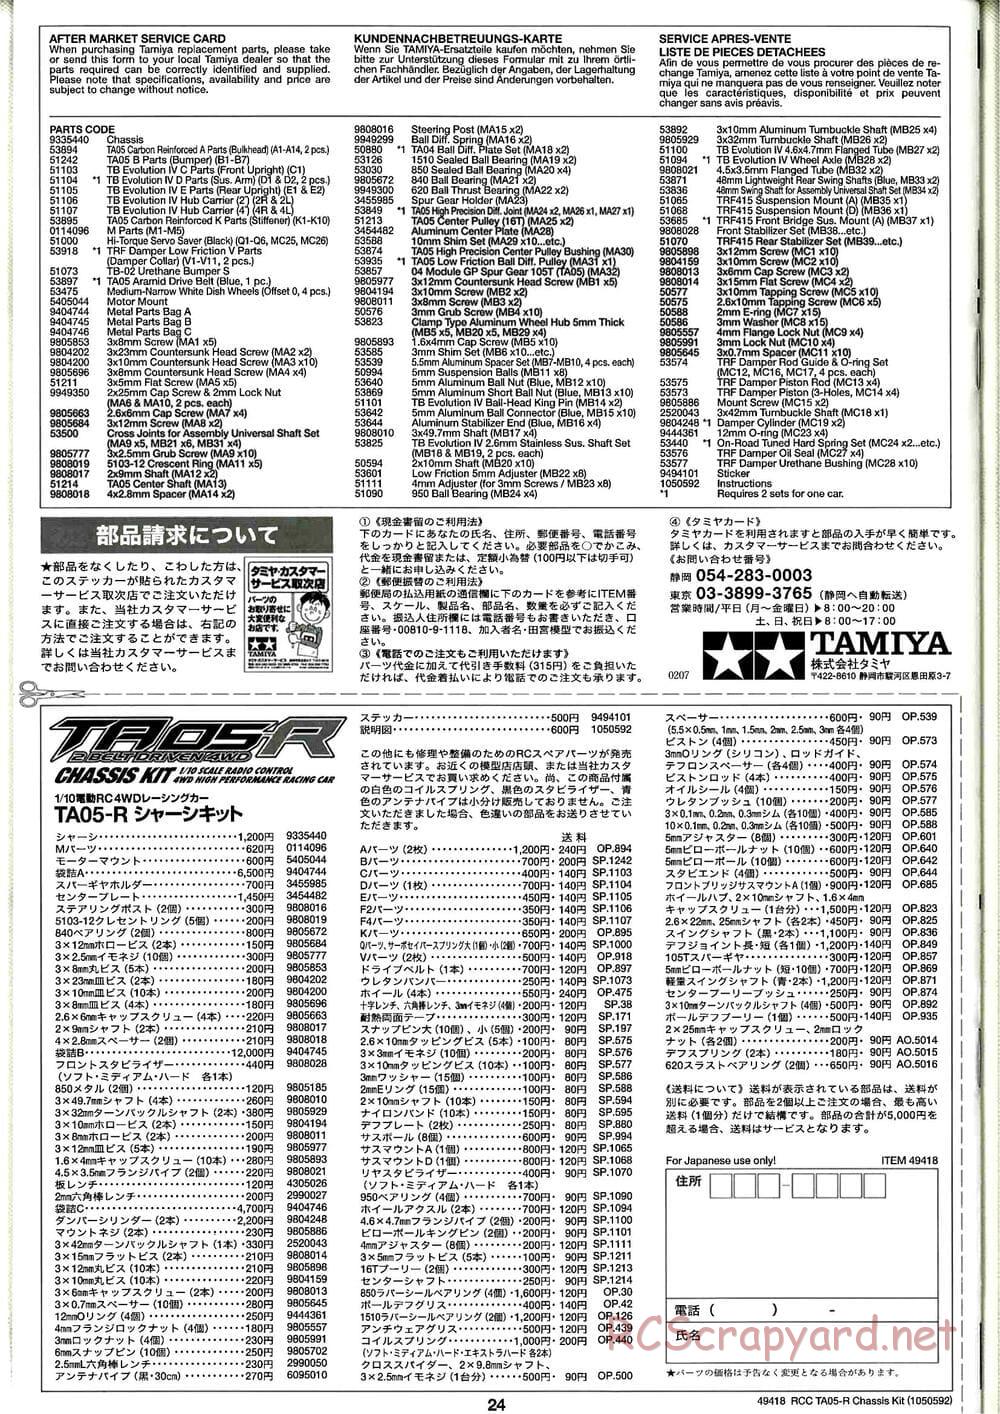 Tamiya - TA05-R Chassis - Manual - Page 24